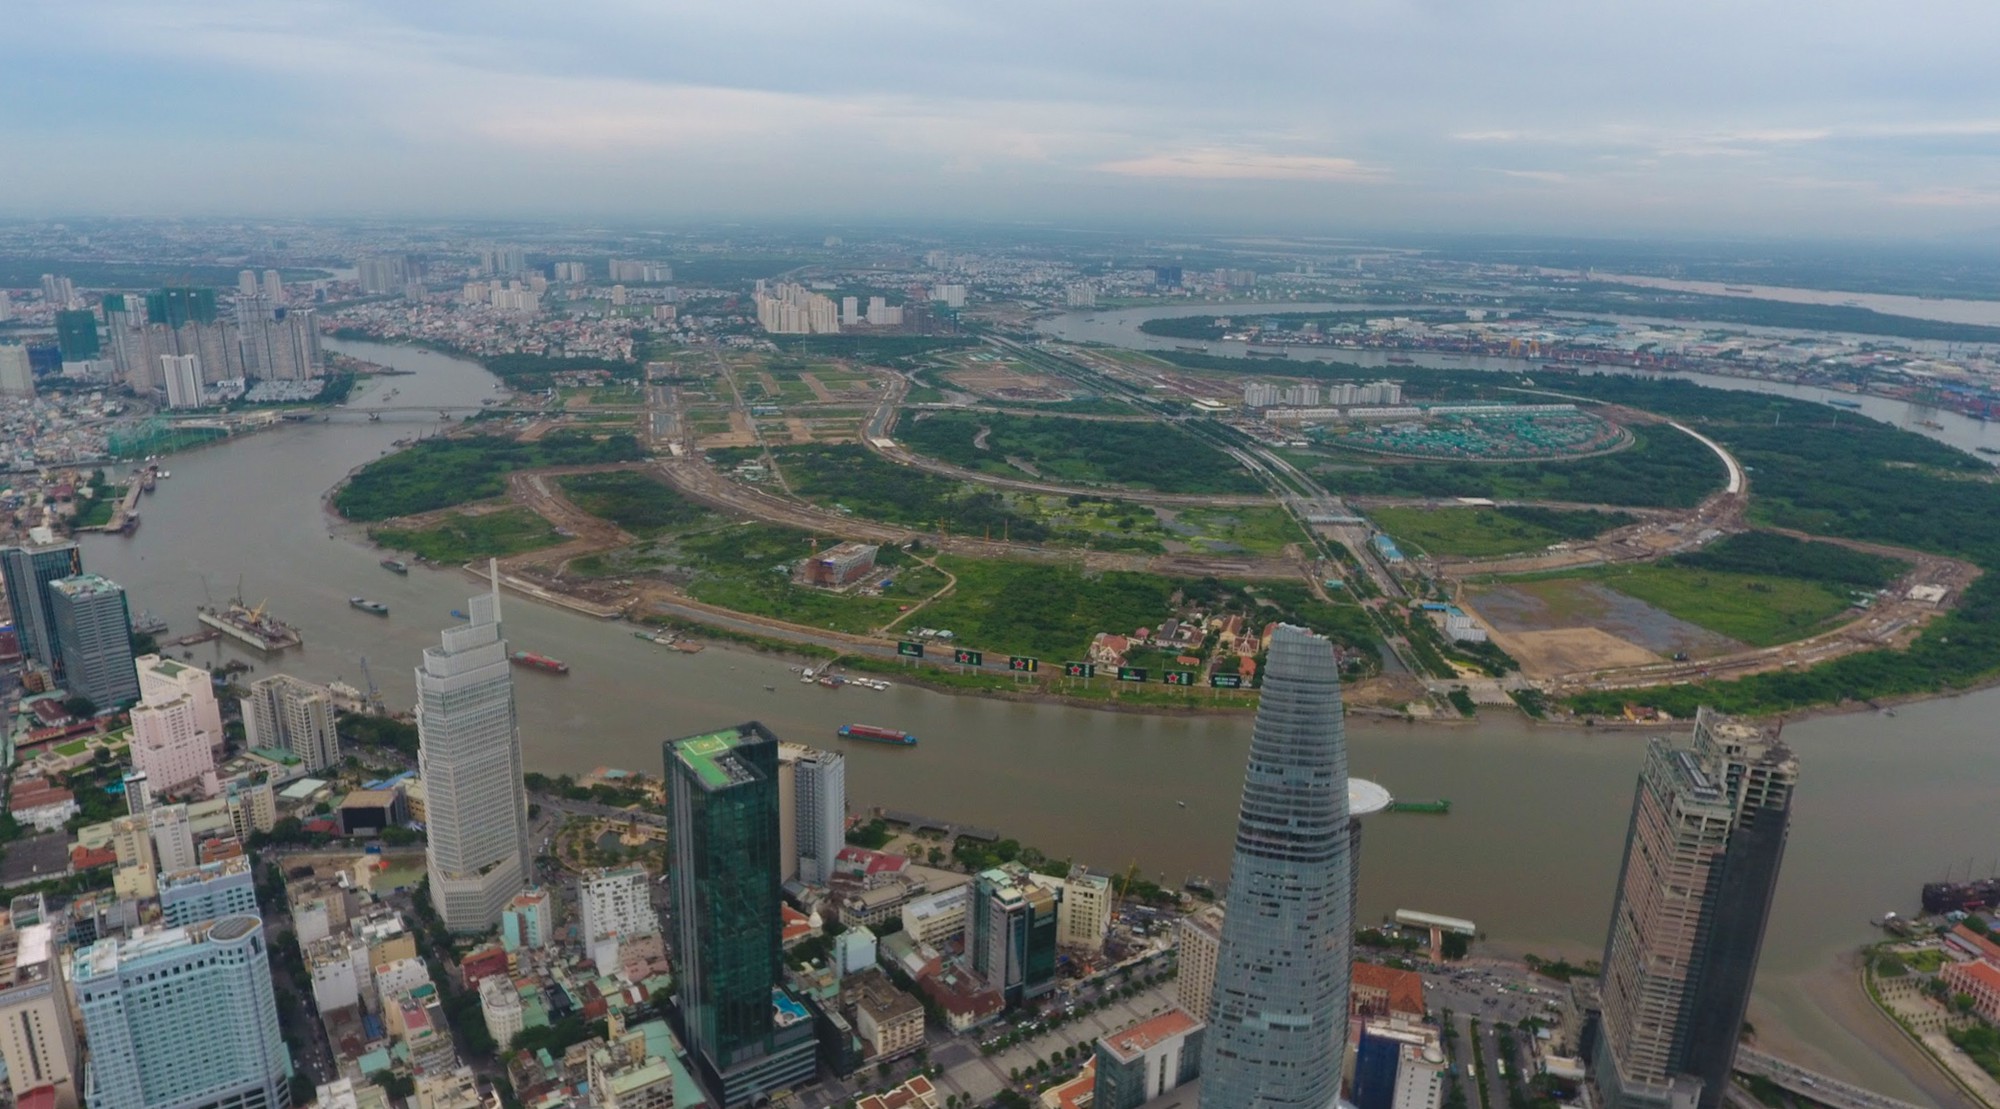 Diện mạo bán đảo Thủ Thiêm - khu đô thị đẹp nhất Sài Gòn nhìn từ trên cao - Ảnh 3.